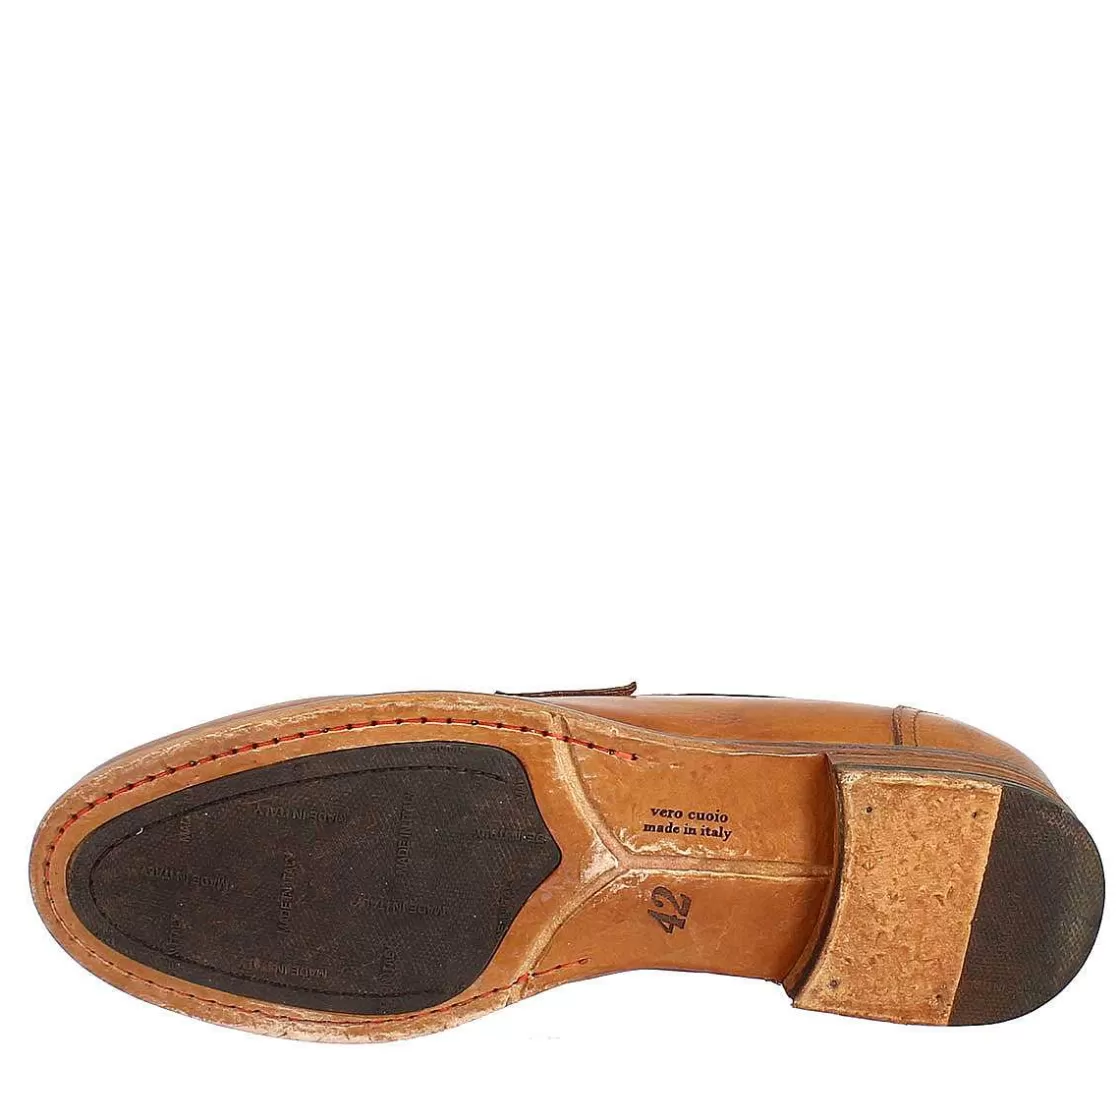 Leonardo Classic Loafers For Men Handmade In Ocher Brown Leather Calfskin Best